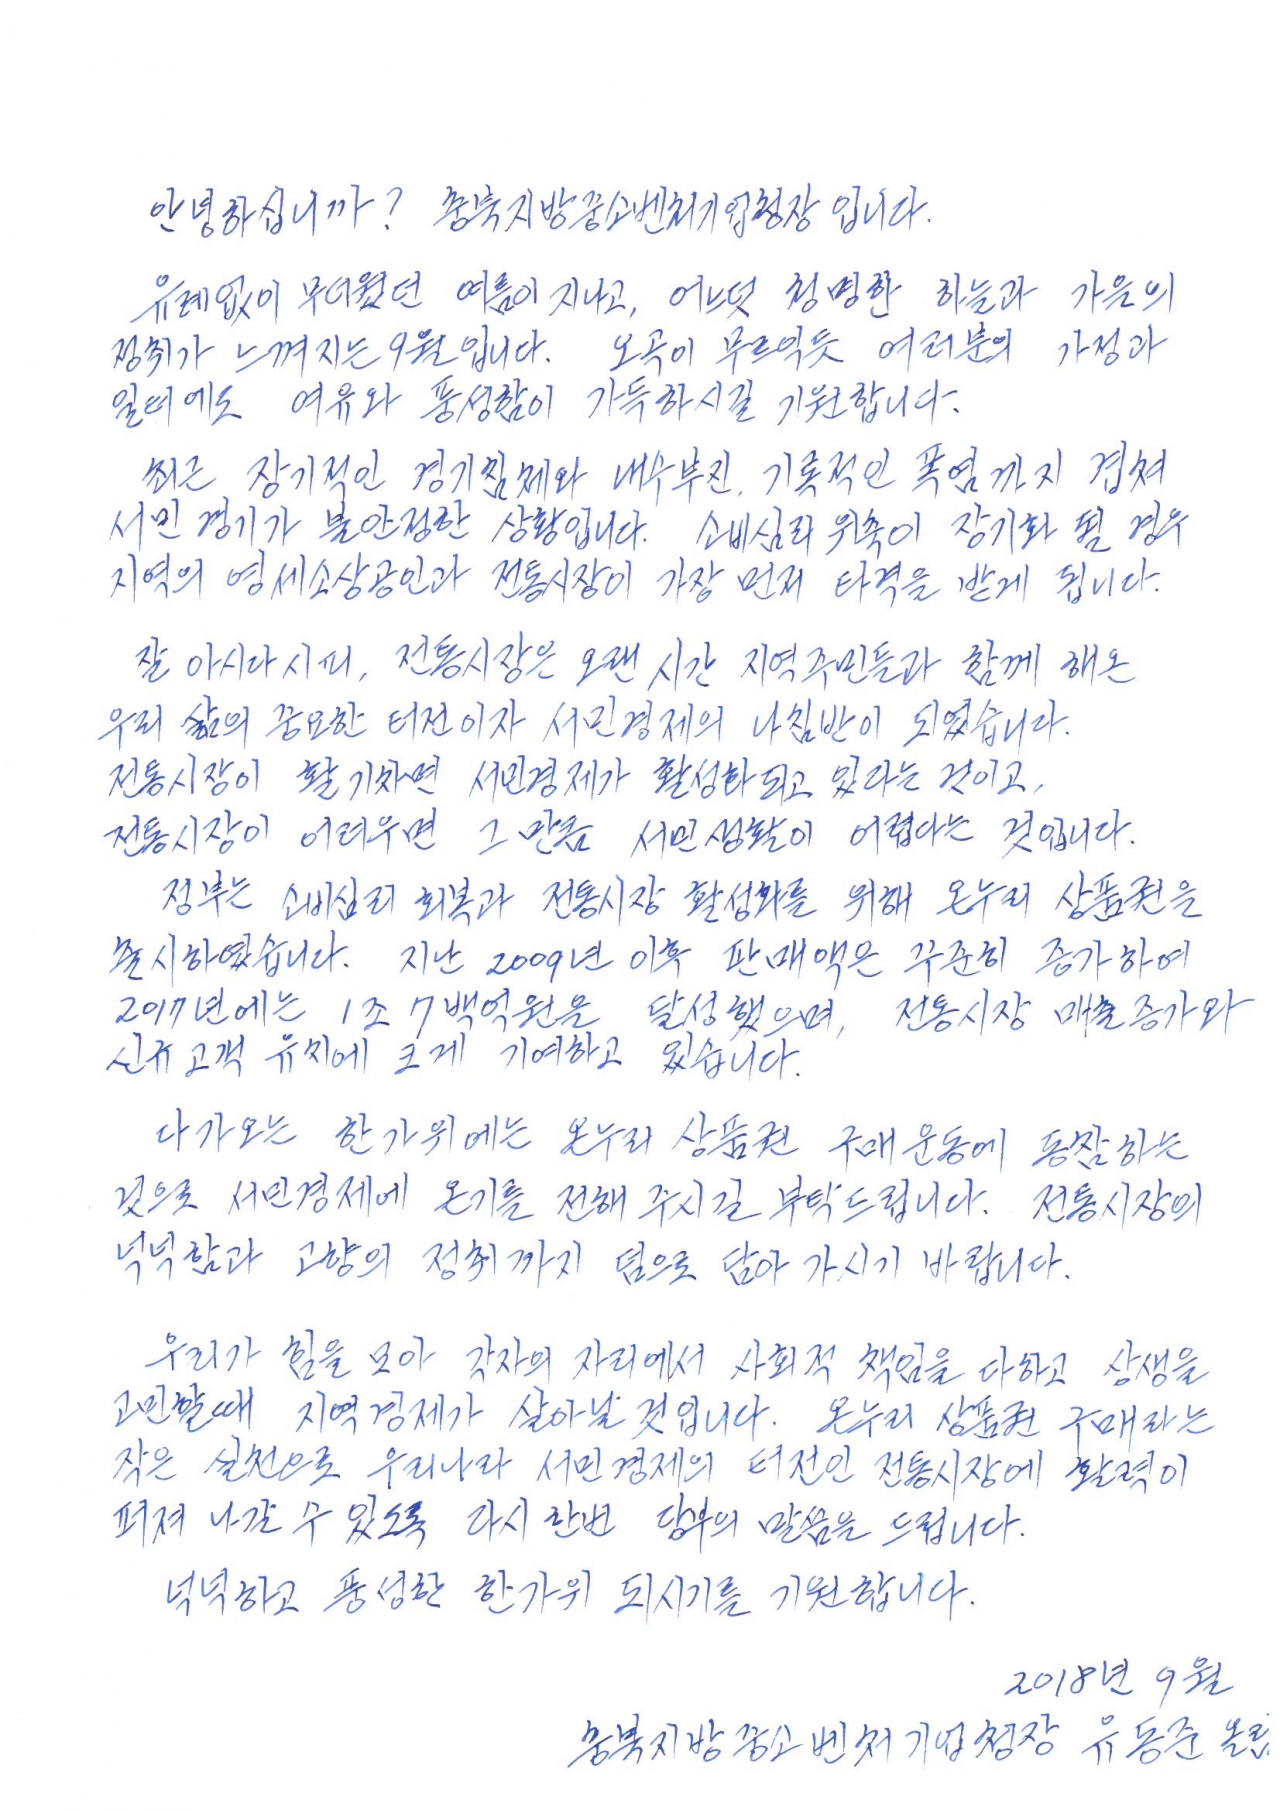 유동준 충북지방중소벤처기업청장이 '온누리상품권 구매 요청'을 위해 직접 쓴 손편지.